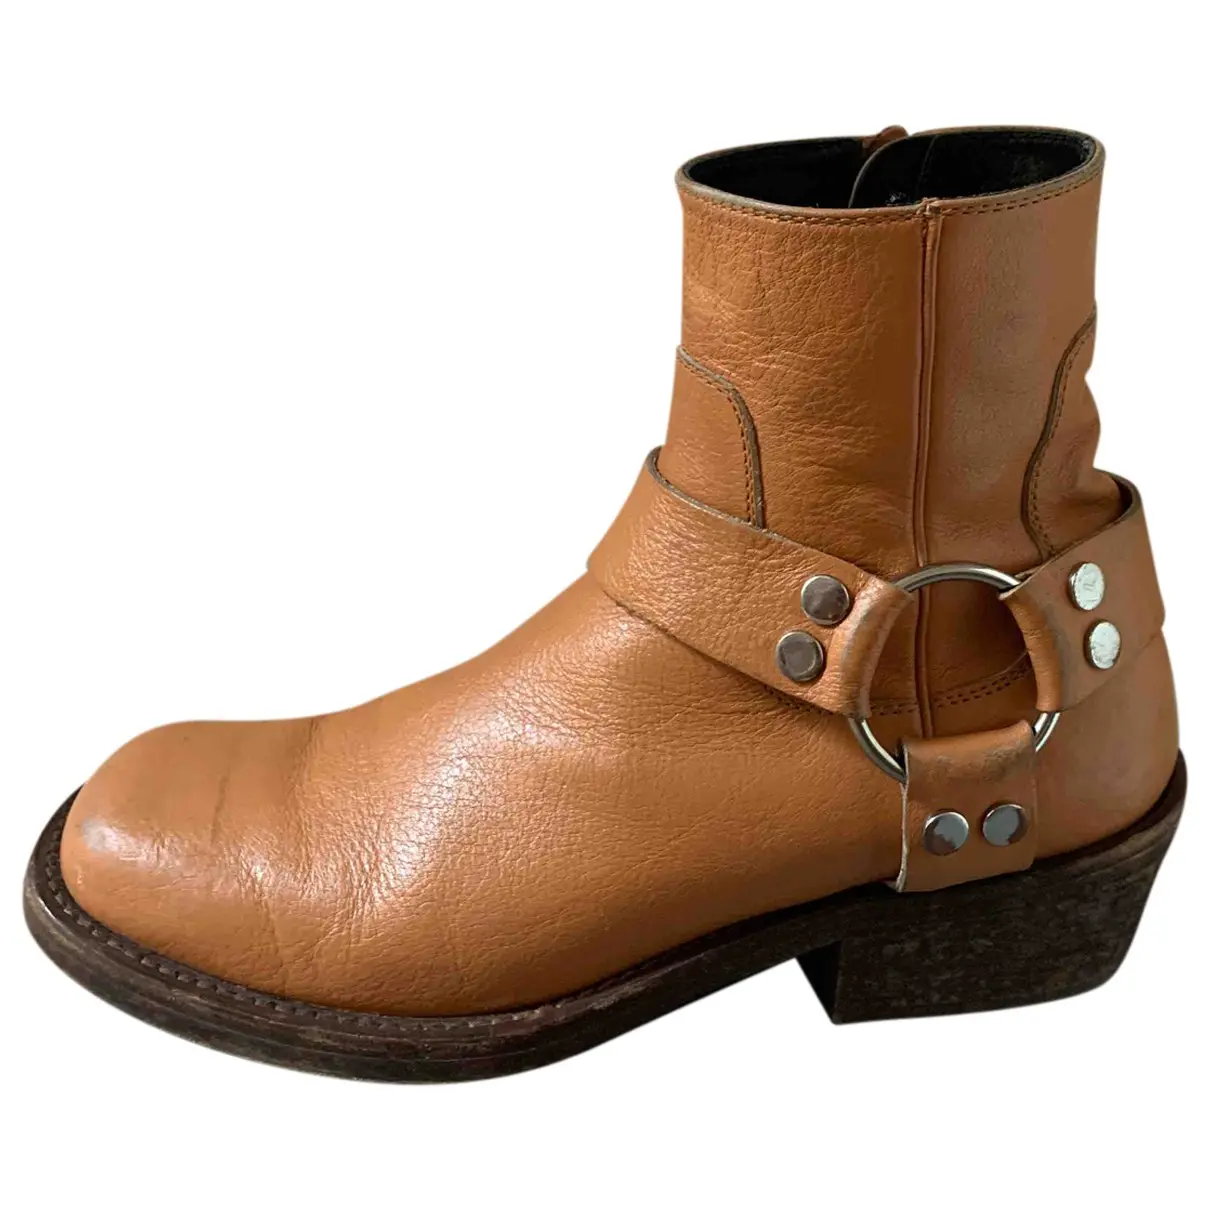 Leather cowboy boots Balenciaga